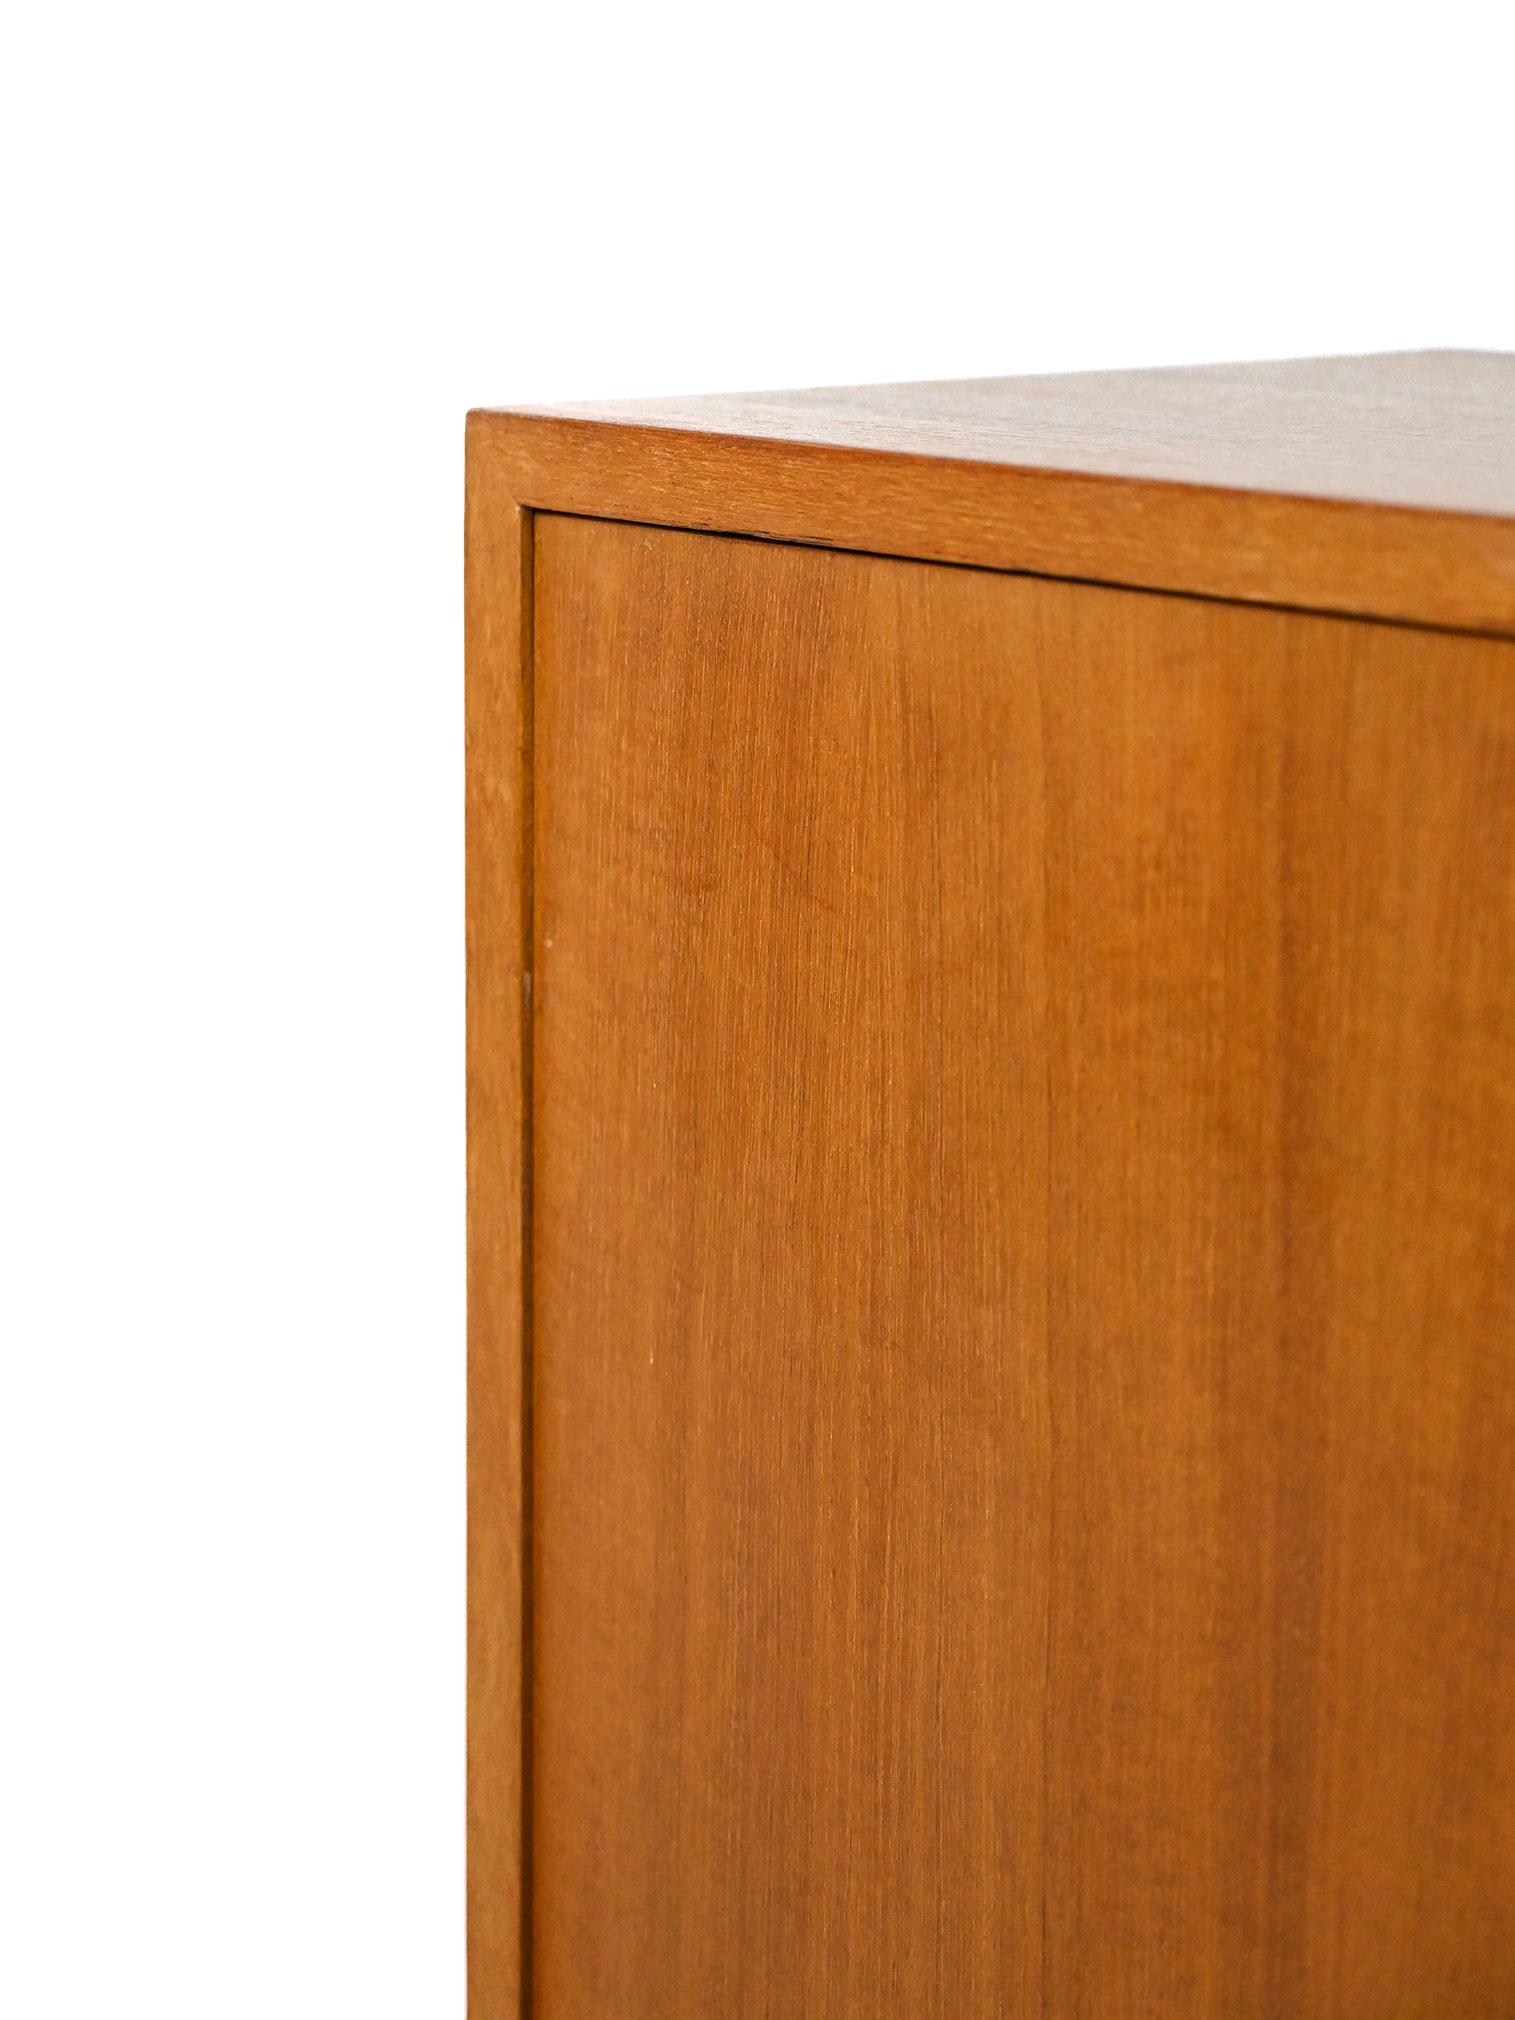 Teak Vintage Cabinet with Hinged Doors